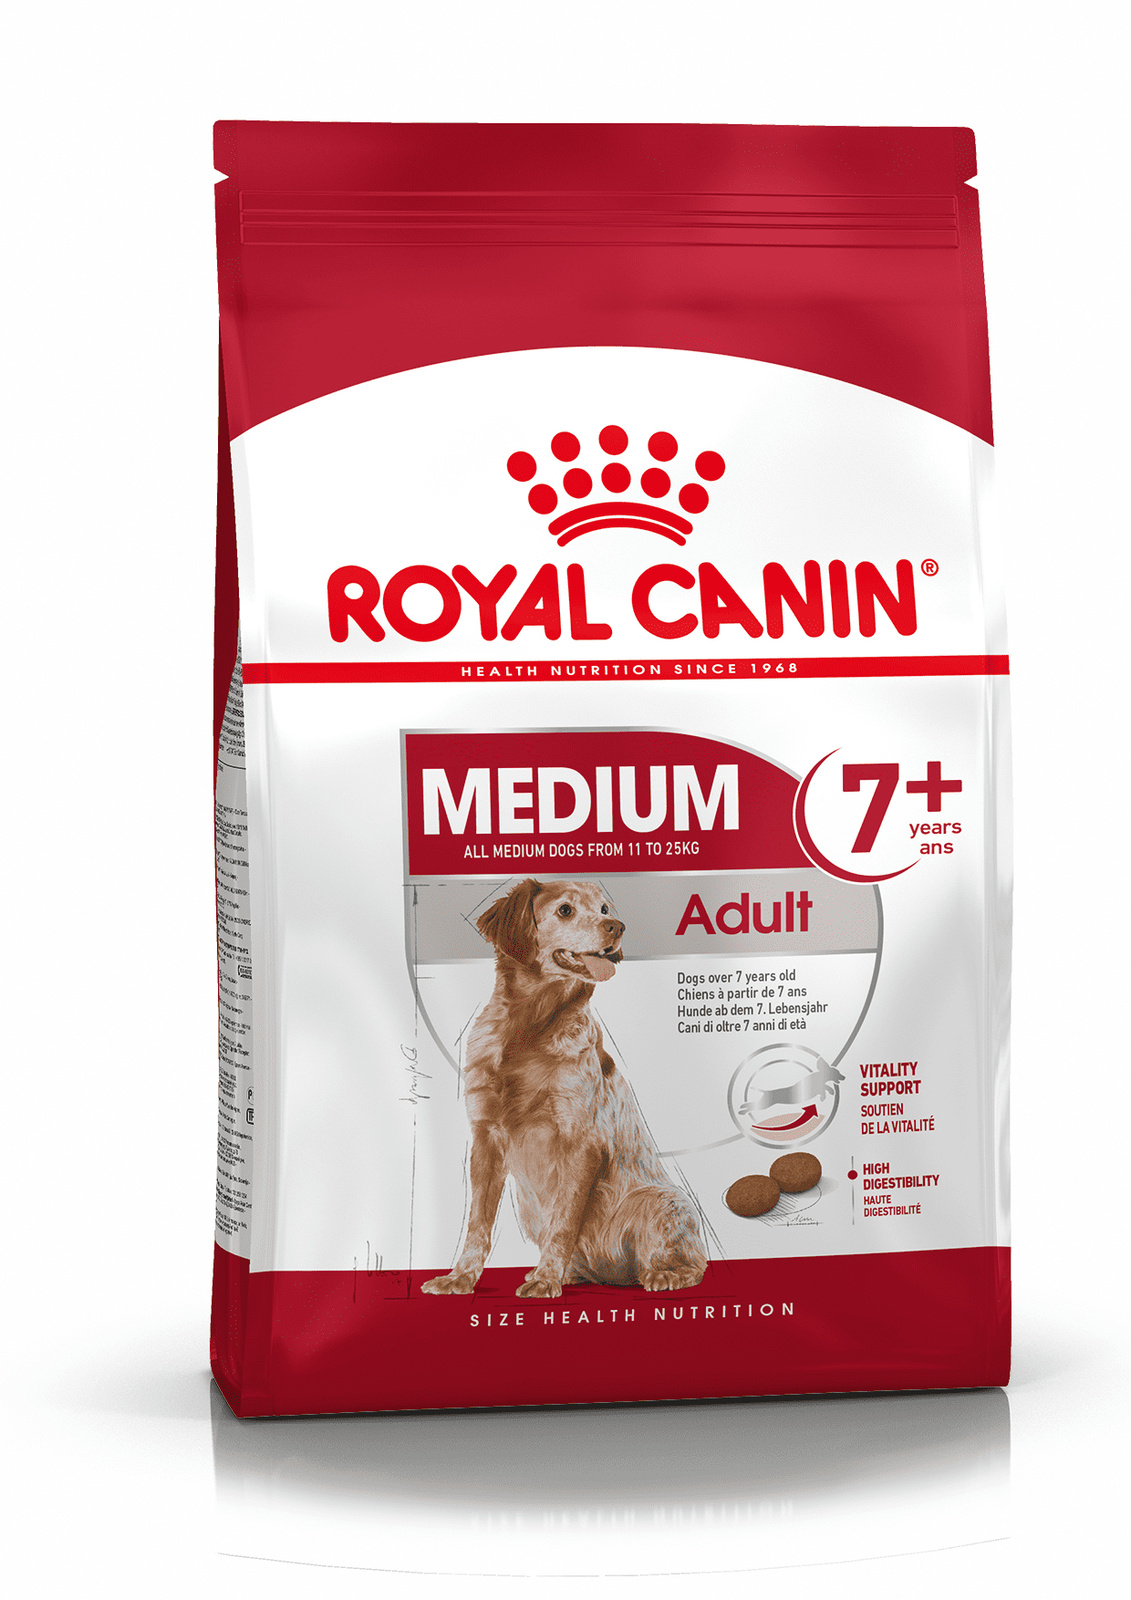 Royal Canin Корм Royal Canin корм для пожилых собак средних размеров: 11-25 кг, 7-10 лет (4 кг) сухой корм royal canin medium adult 7 для собак средних размеров старше 7 лет 1 уп х 2 шт х 15 кг для средних пород